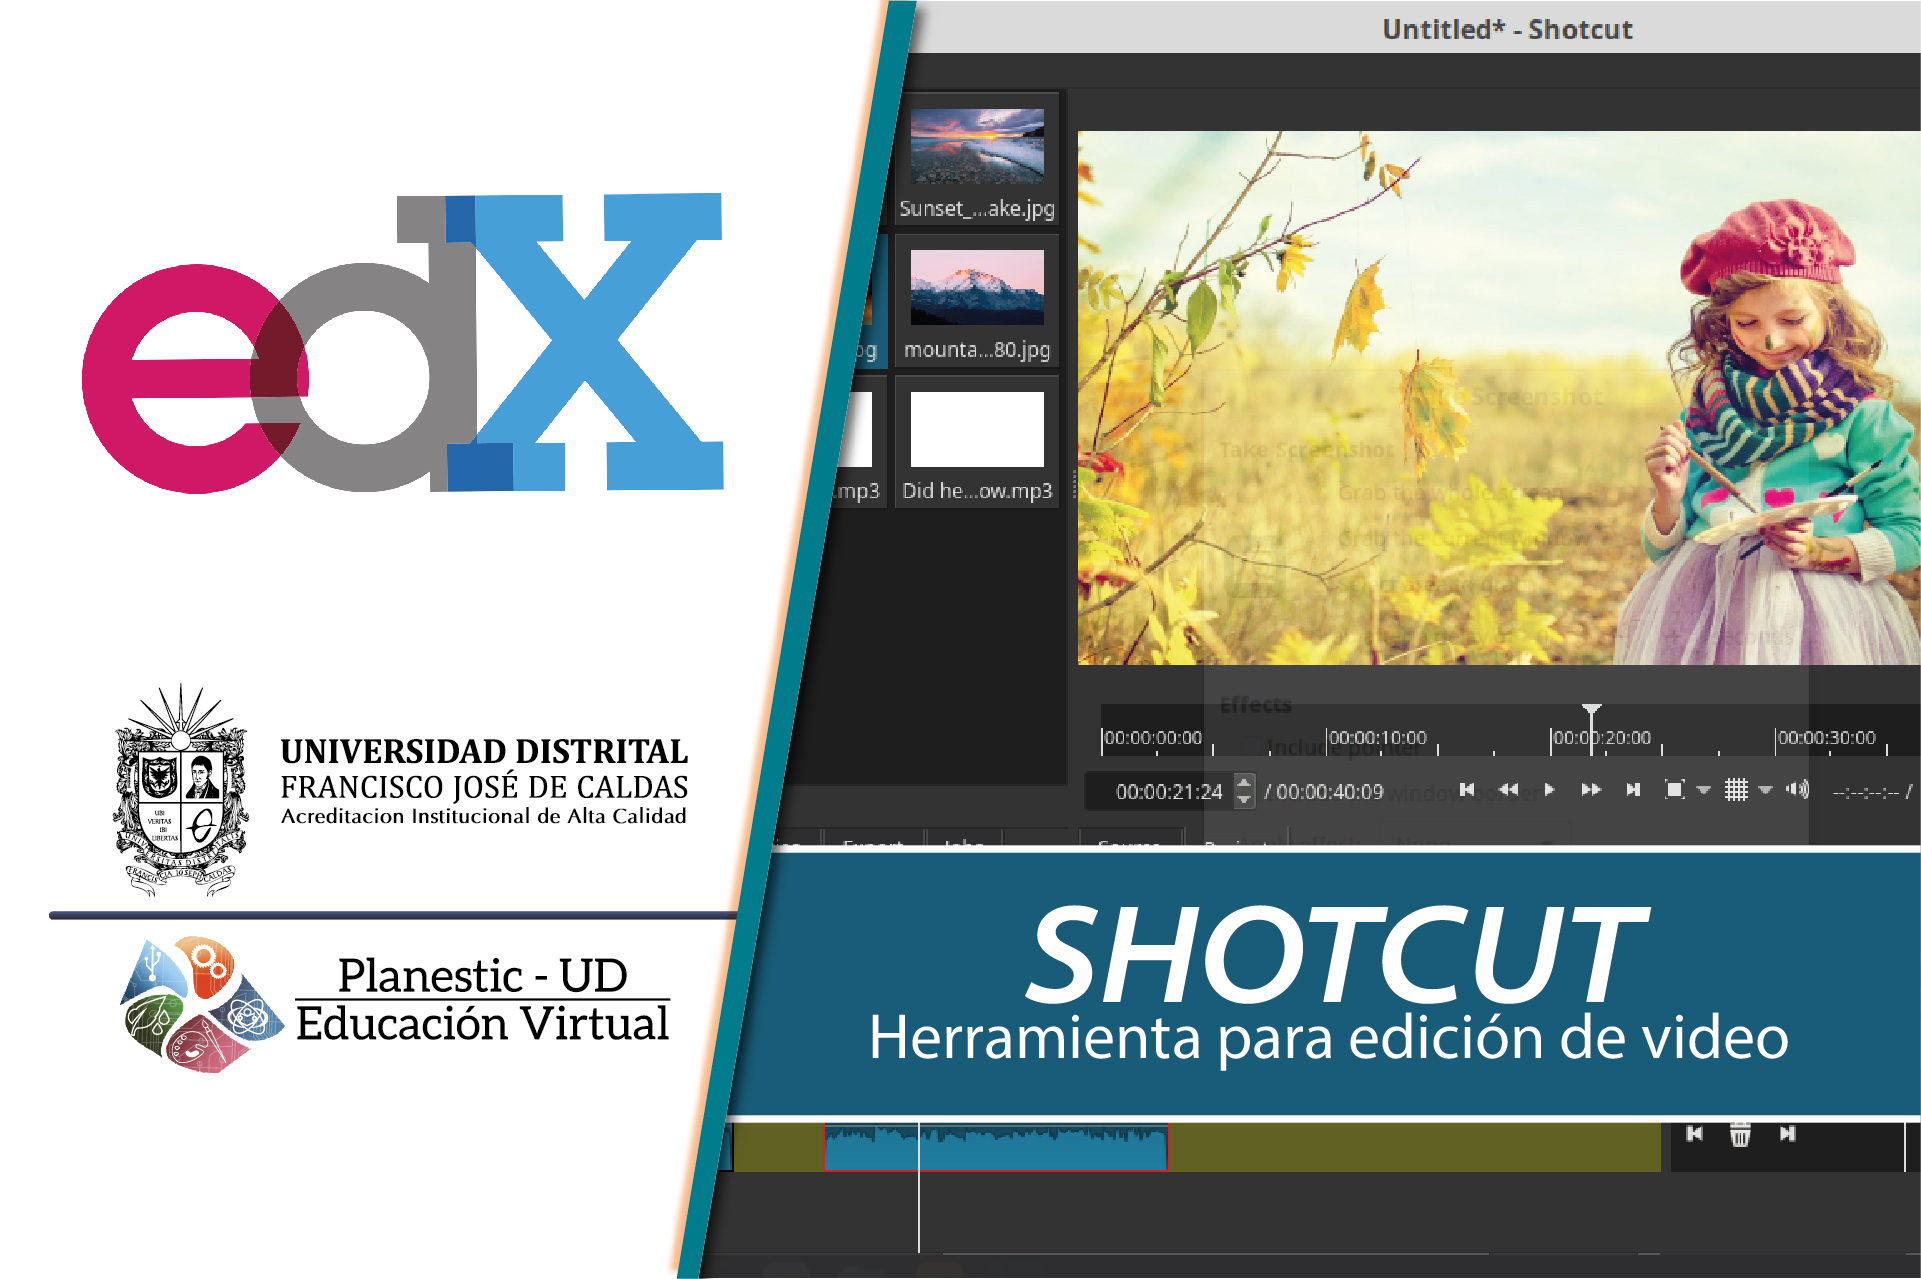 Shotcut: herramienta para edición de video P007H16